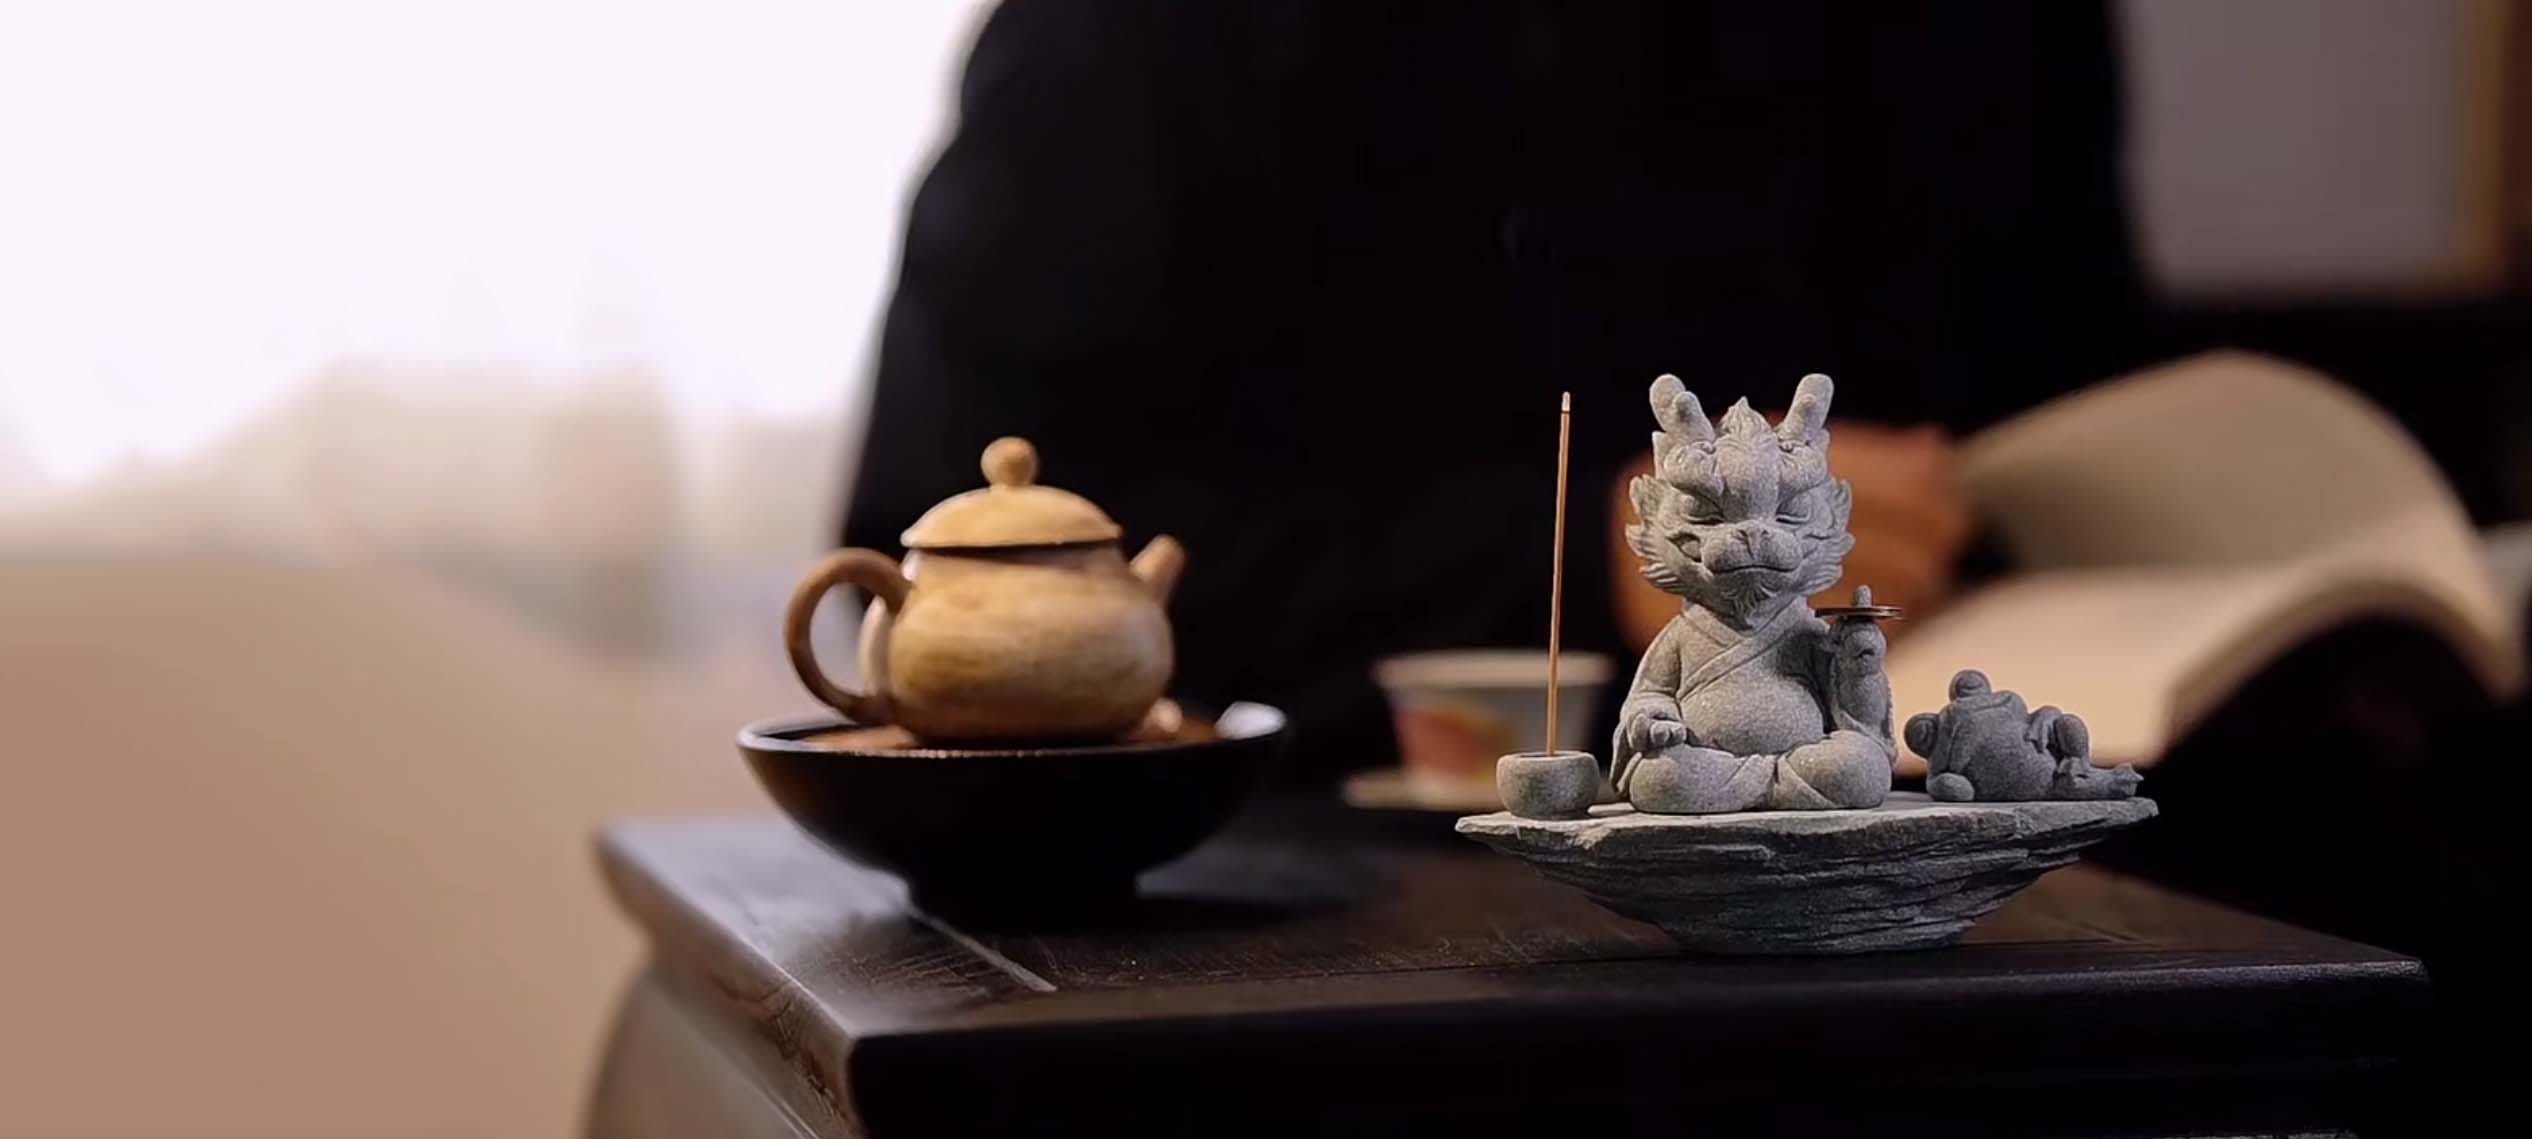 meditating dragon tea pet